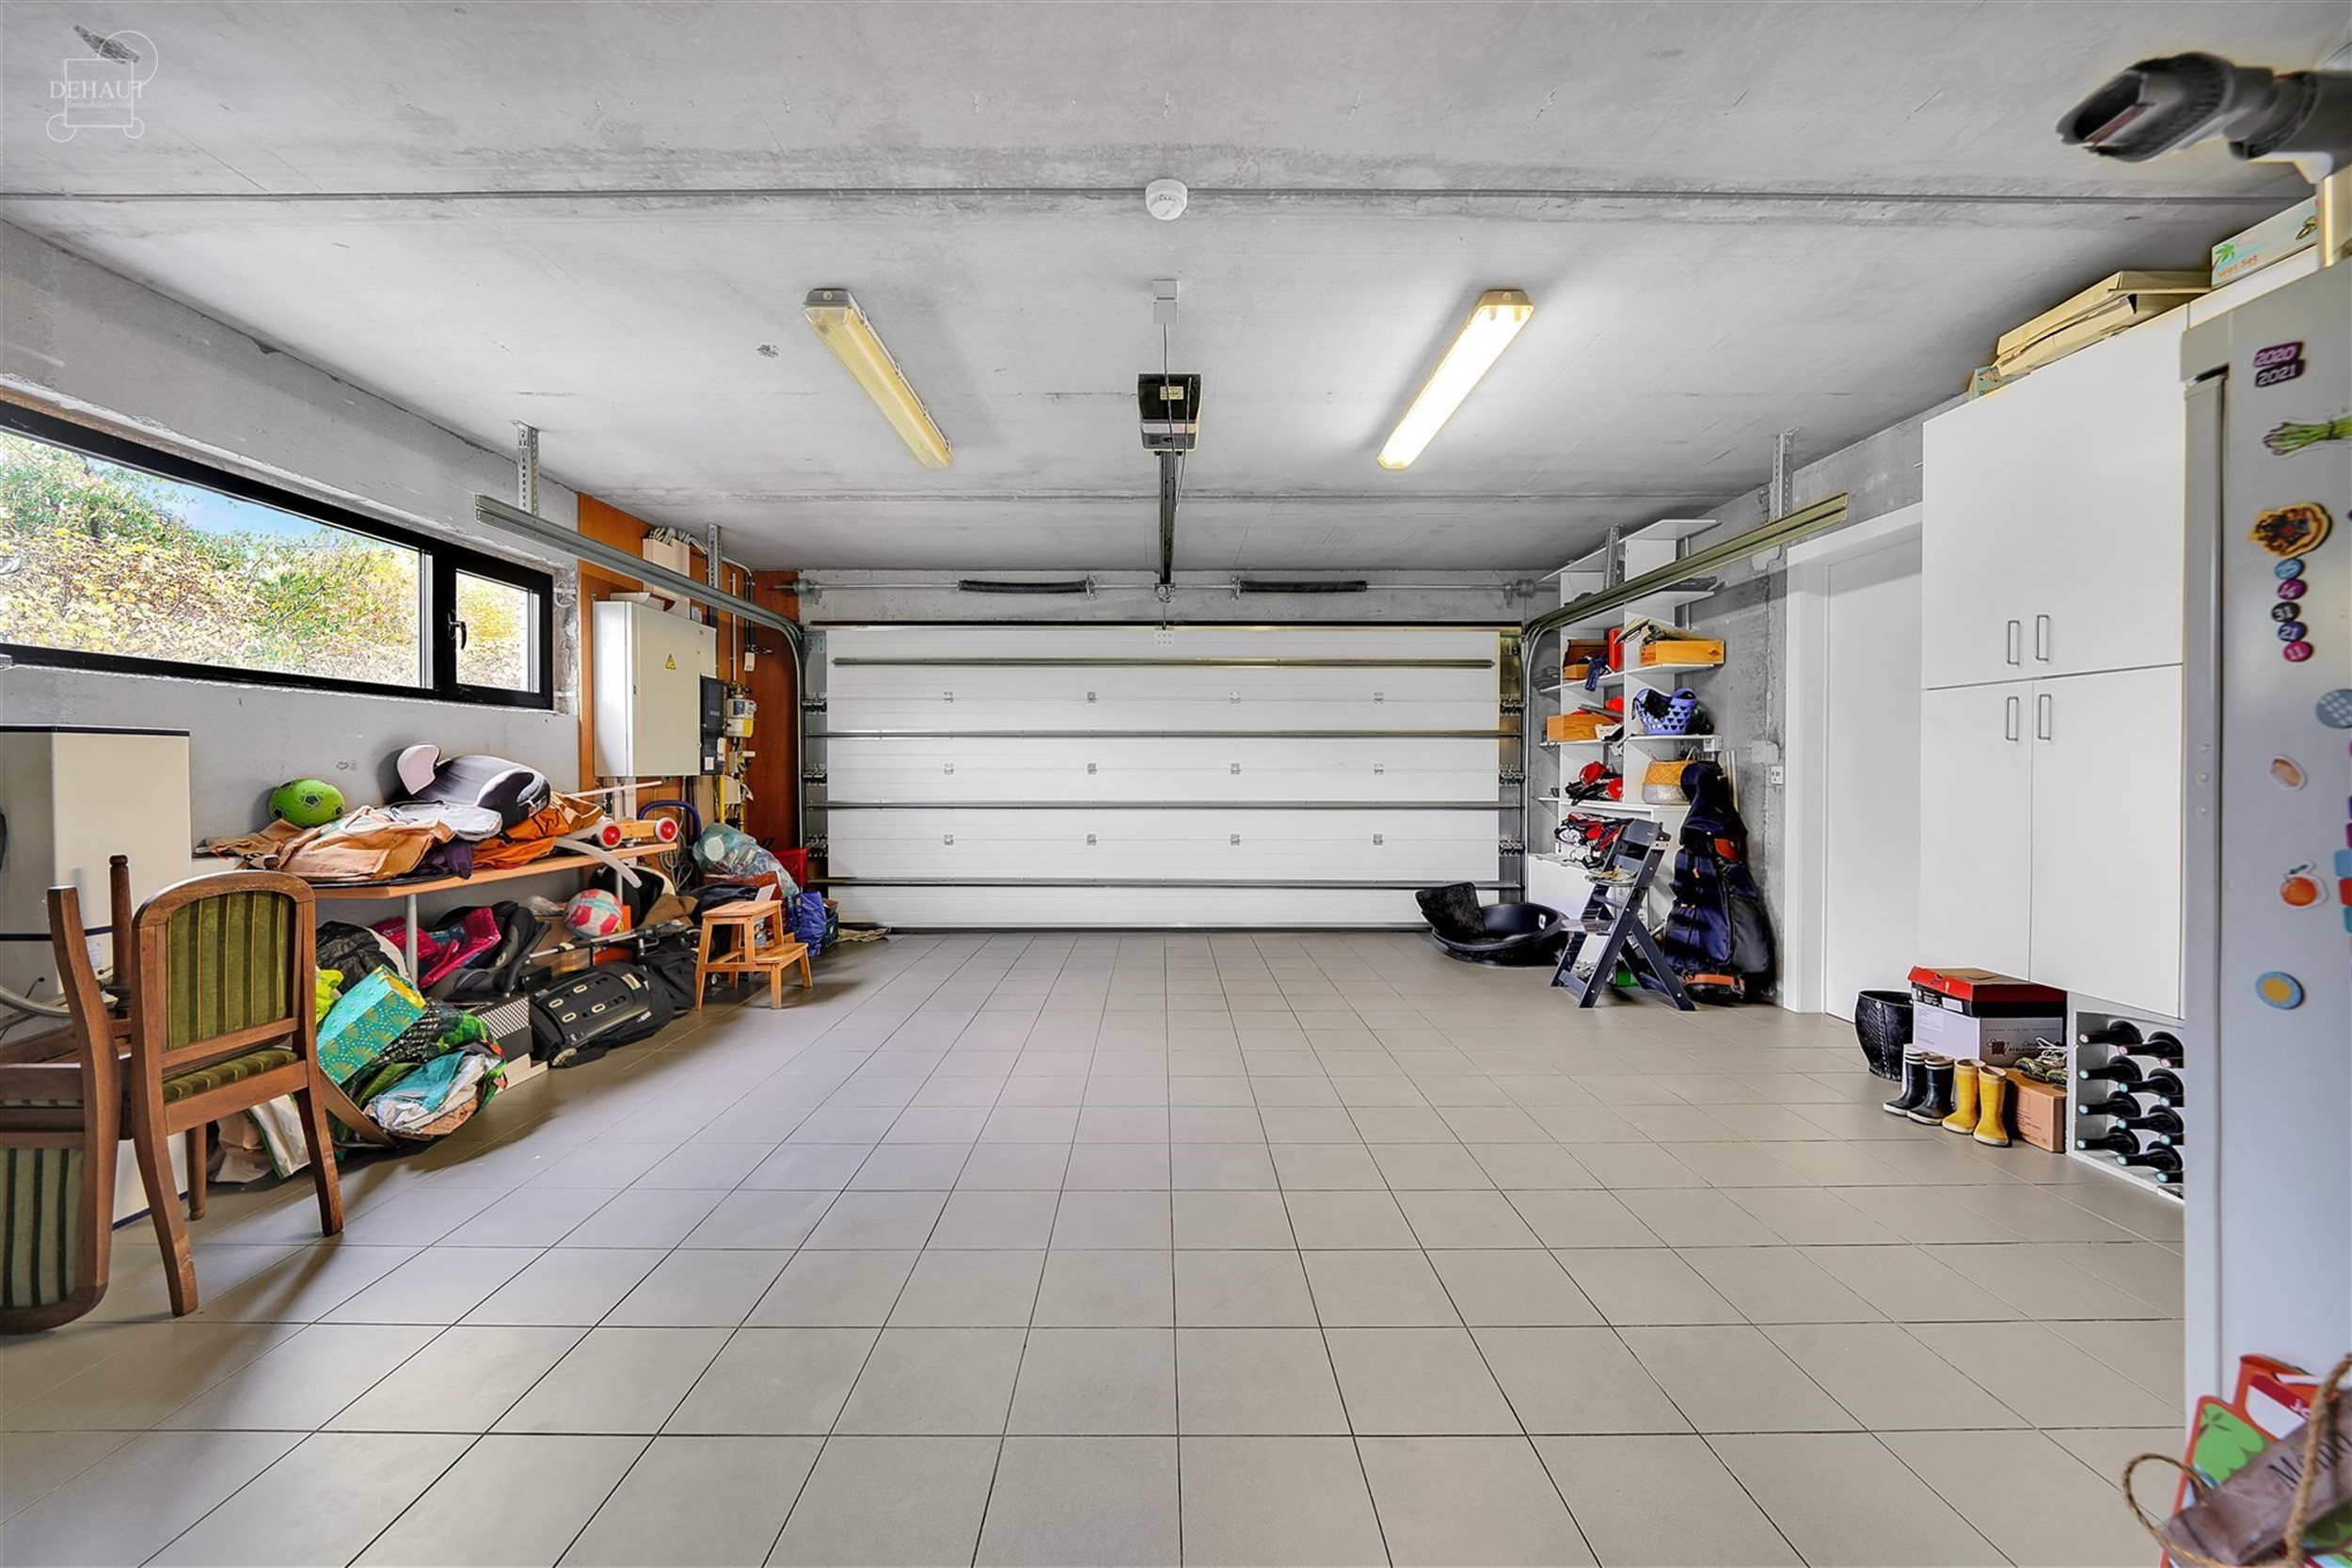 Magnifique maison individuelle avec garage et parking privé érigée sur une parcelle de terrain d'env. 1.355m².
Se compose au rez-de-chaussée d'u...